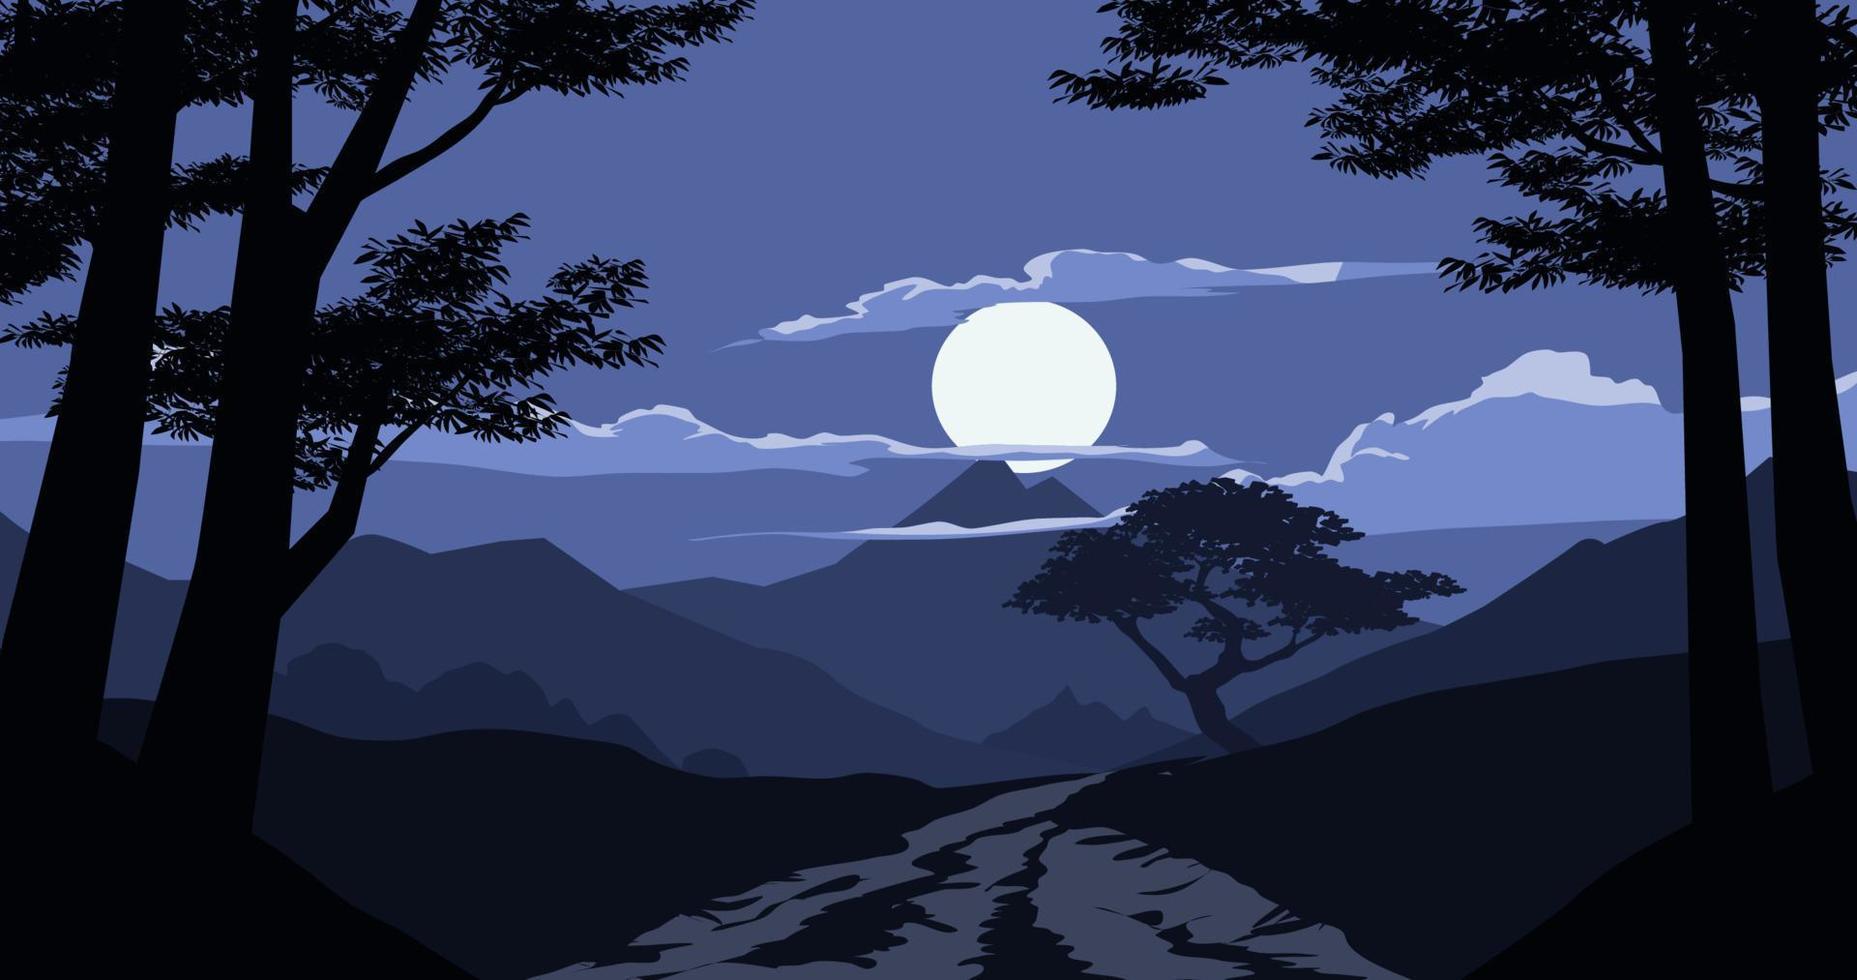 chiaro di luna al di sopra di il montagna.notte scenario visto a partire dal il buio foresta.vettore paesaggio illustrazione vettore